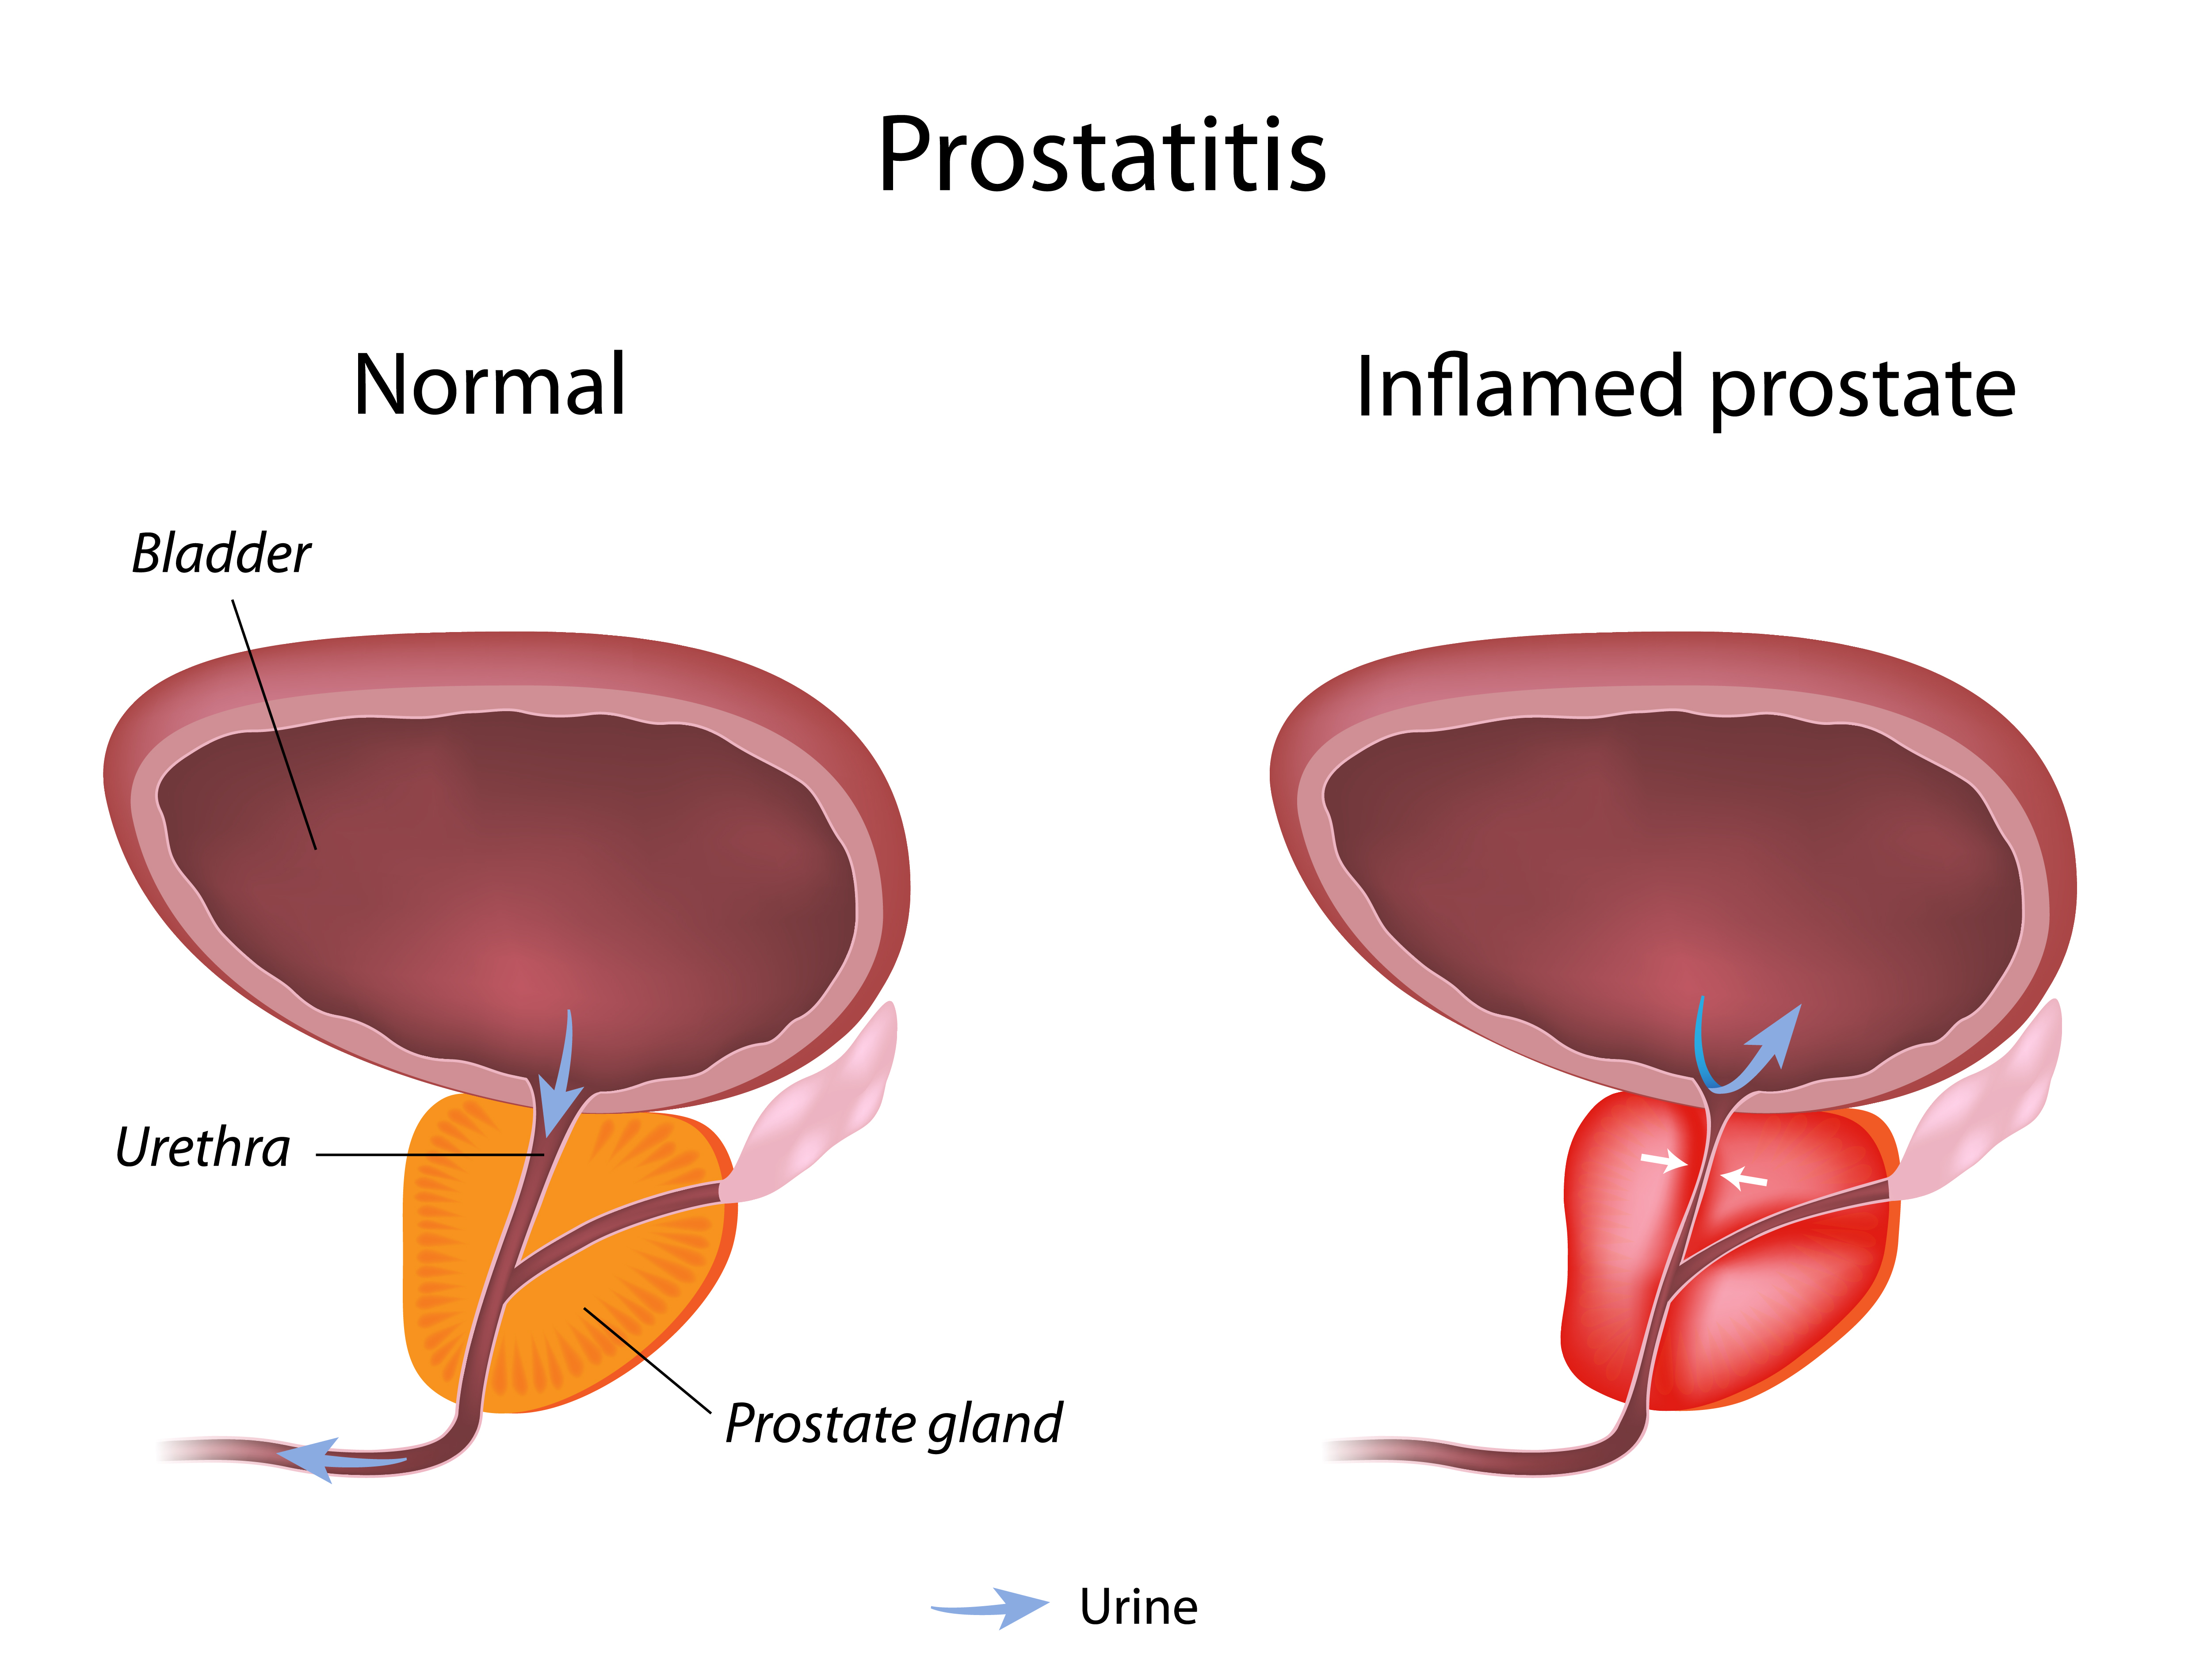 Hogyan nyugodt a prosztatitis